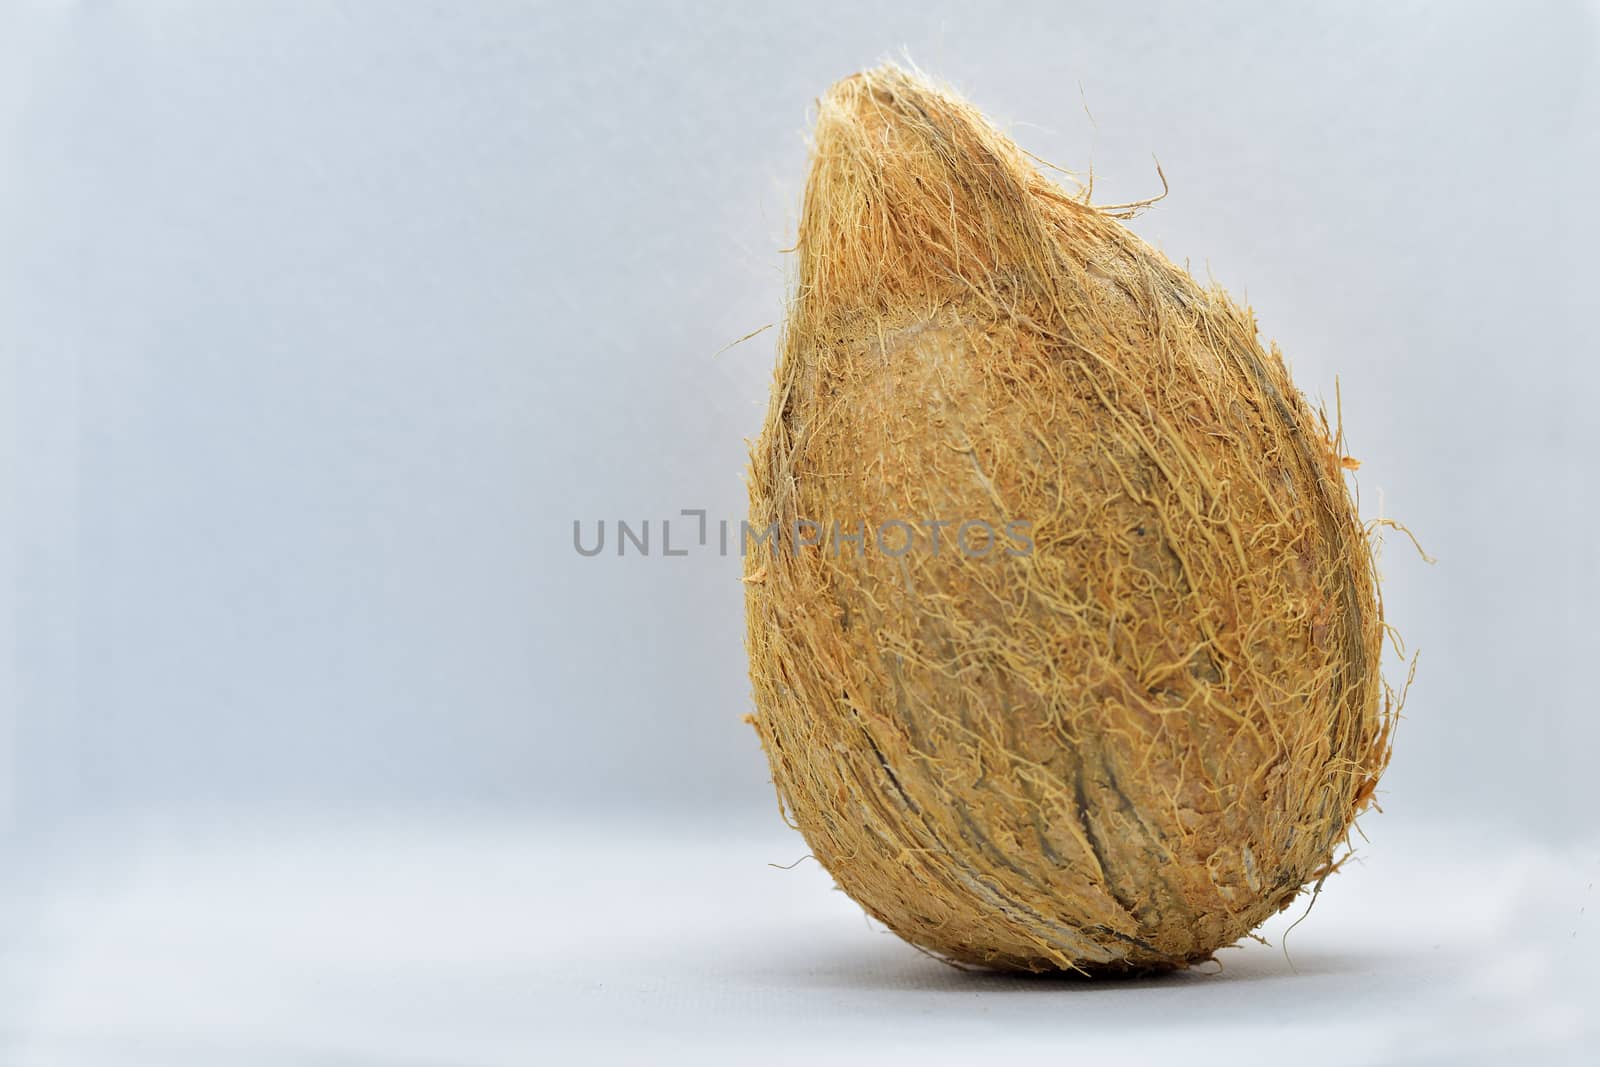 De-husked coconut fruit by rkbalaji